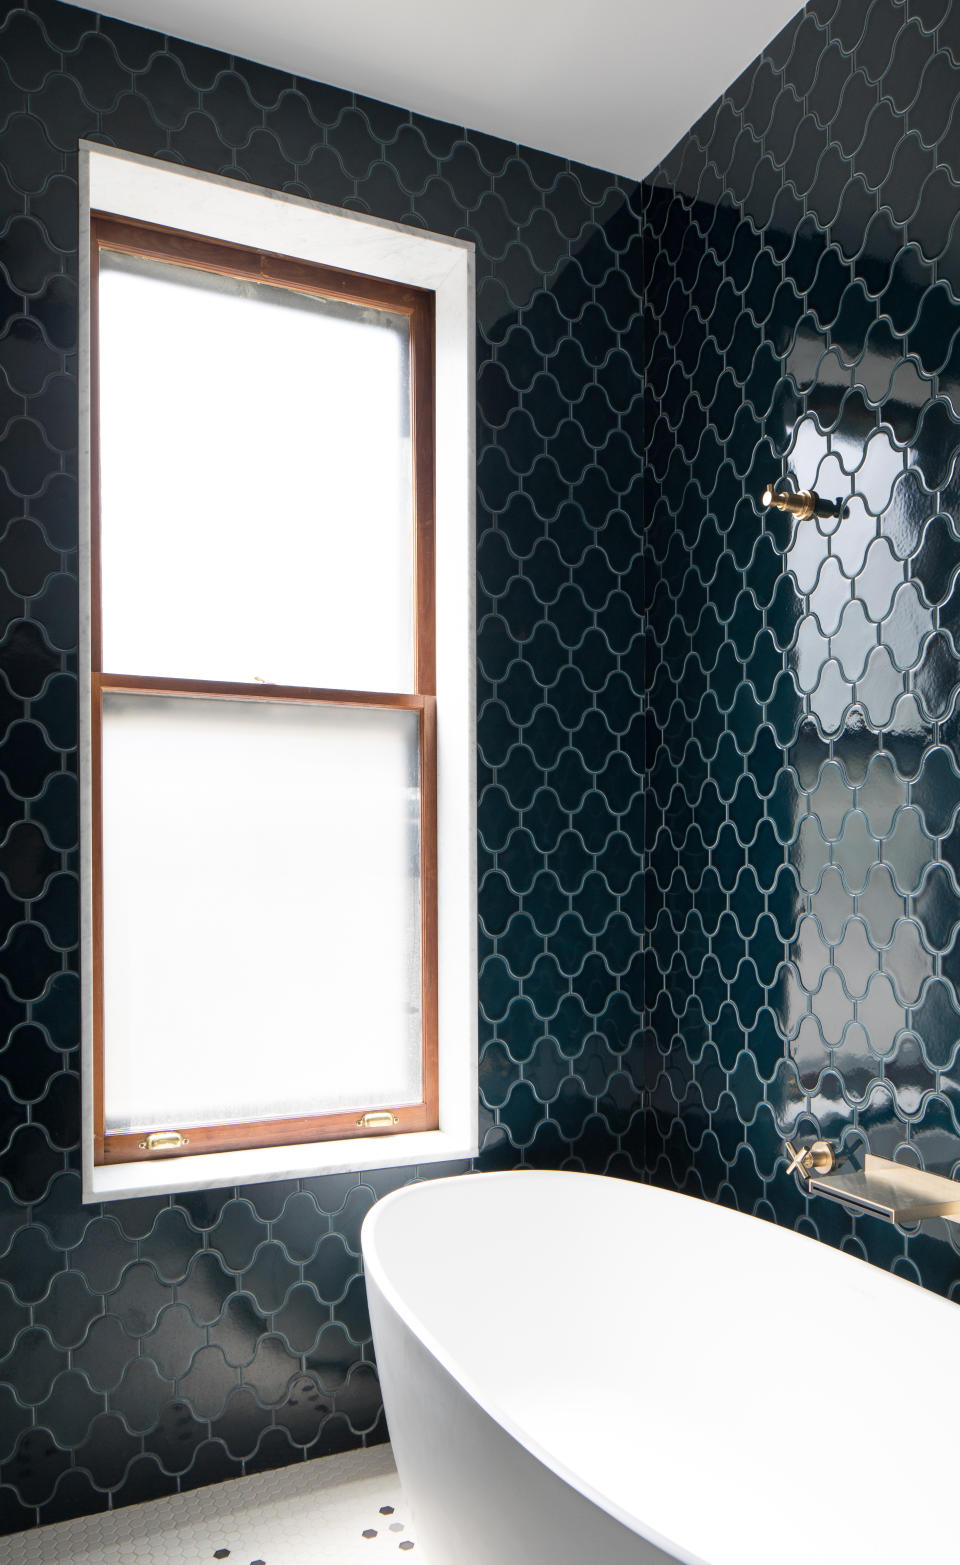 A bathroom with shiny blue tiles